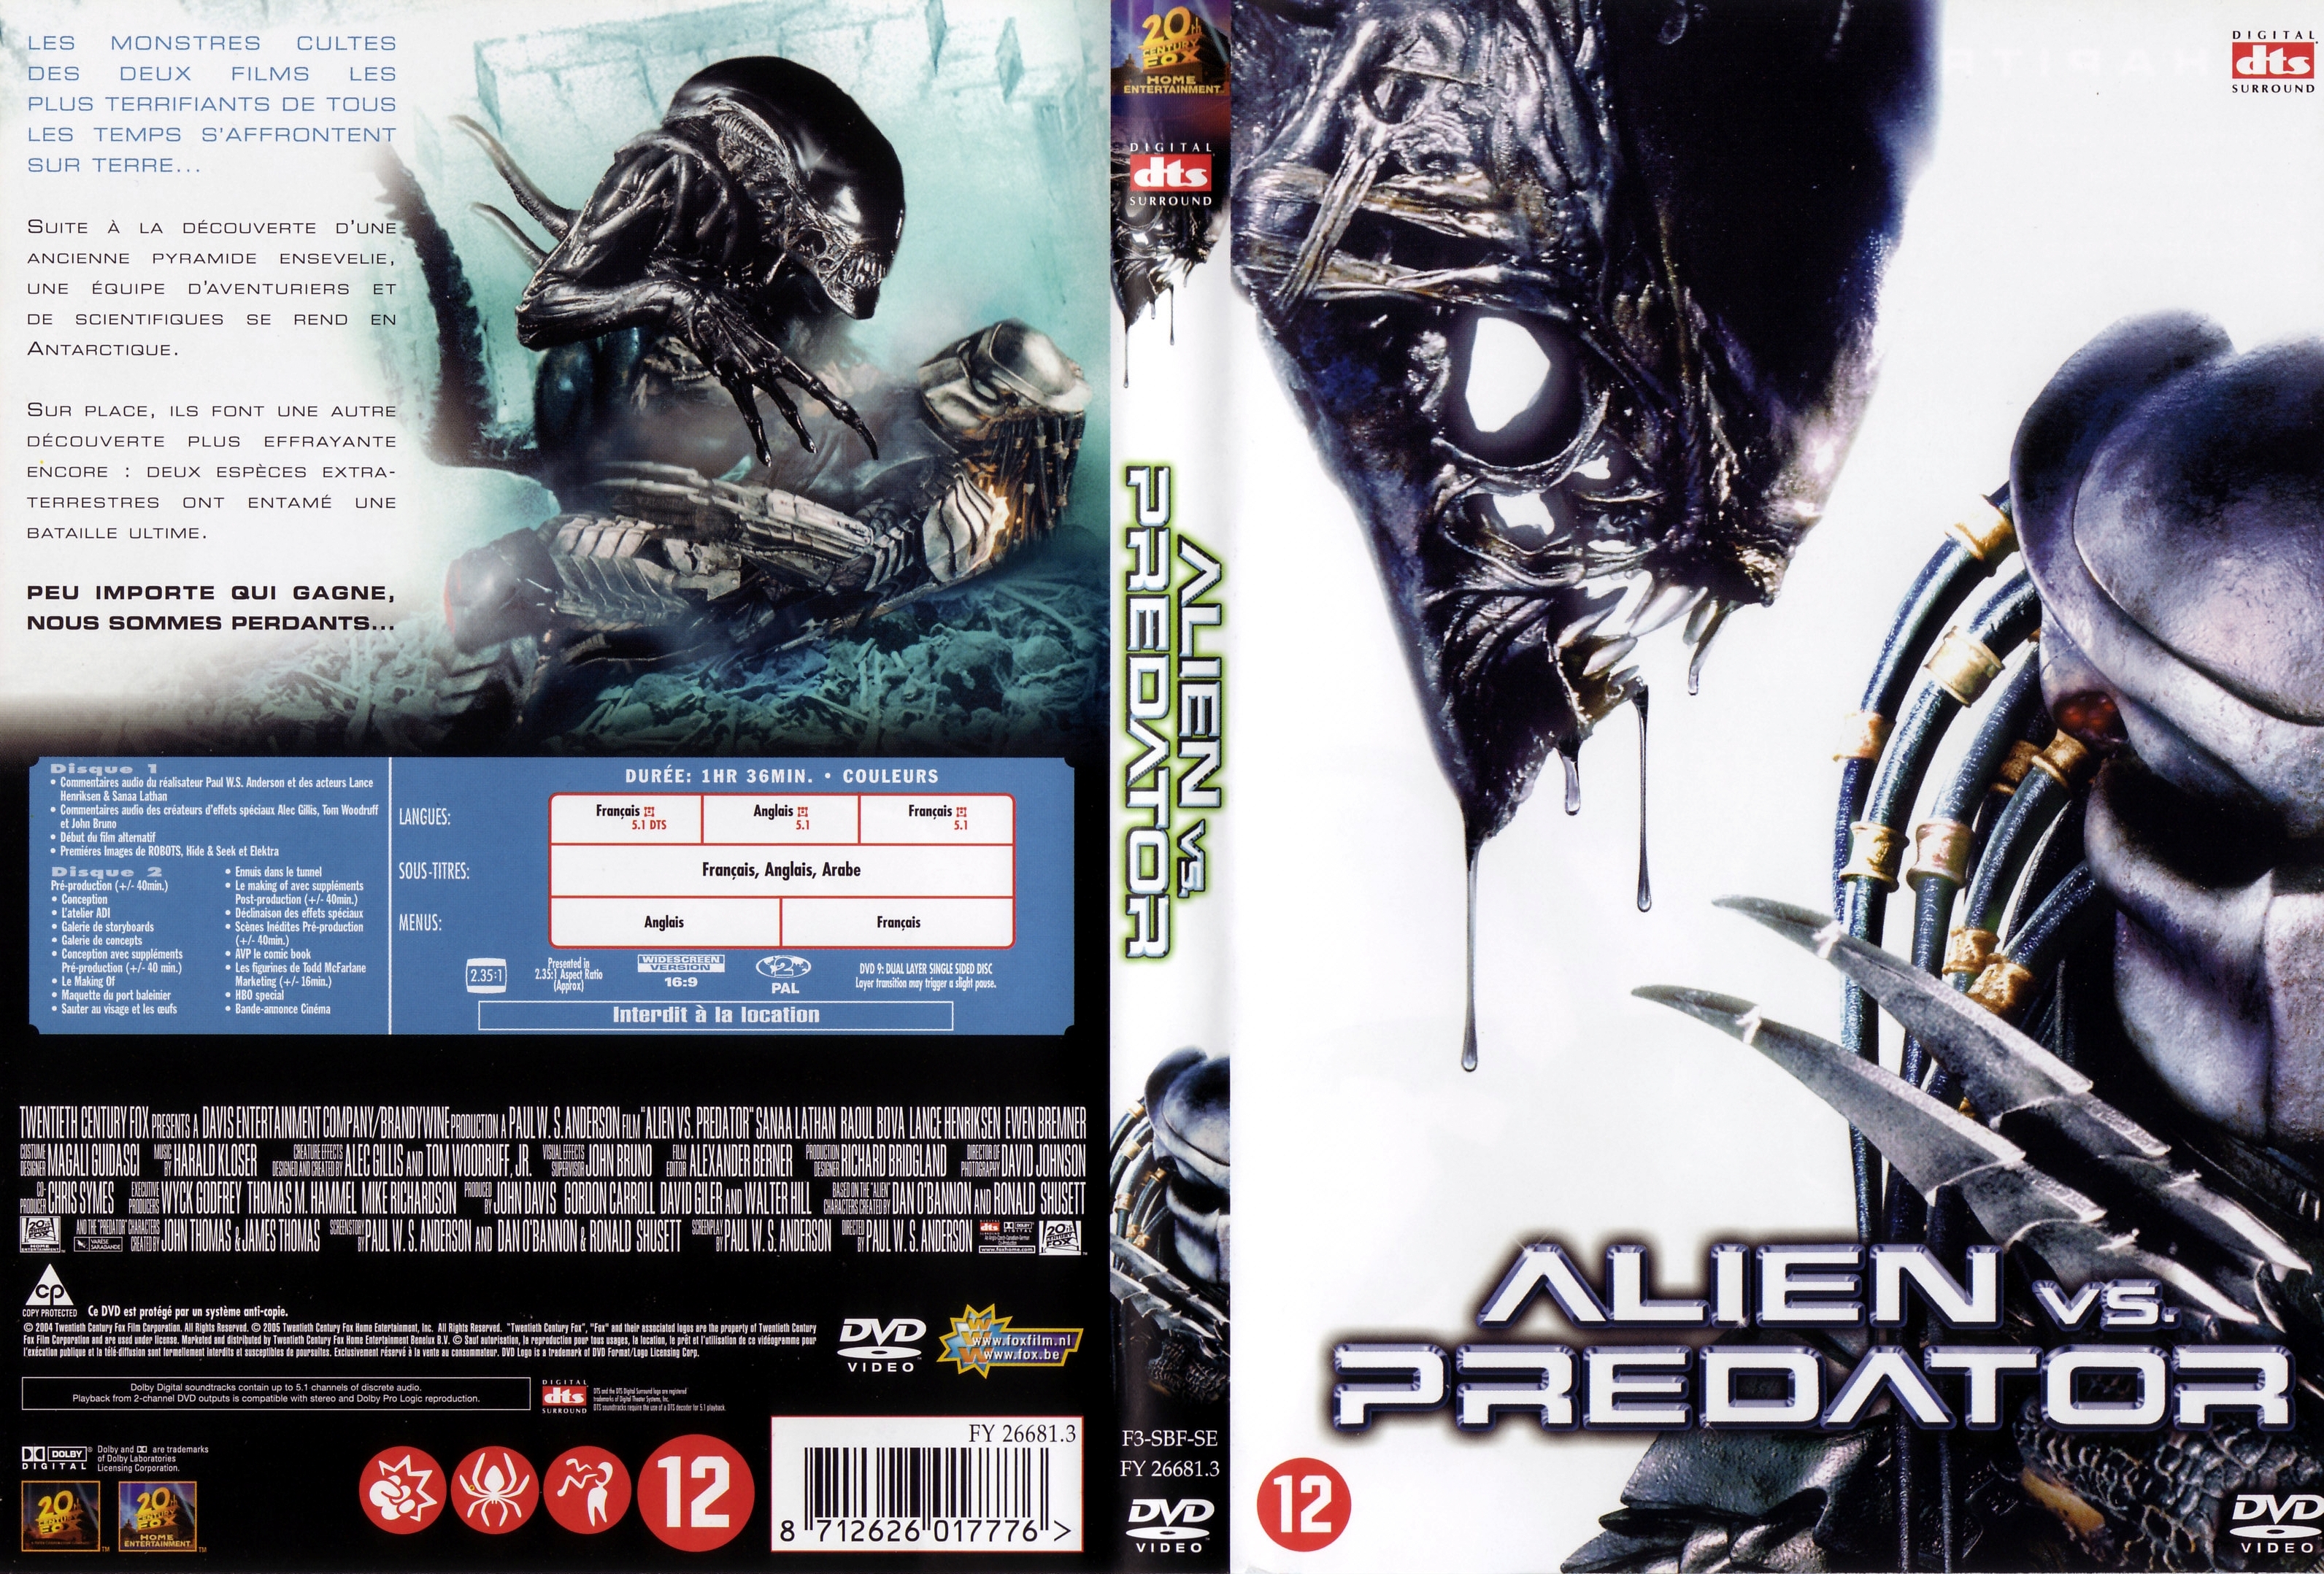 Jaquette DVD Alien vs Predator v3